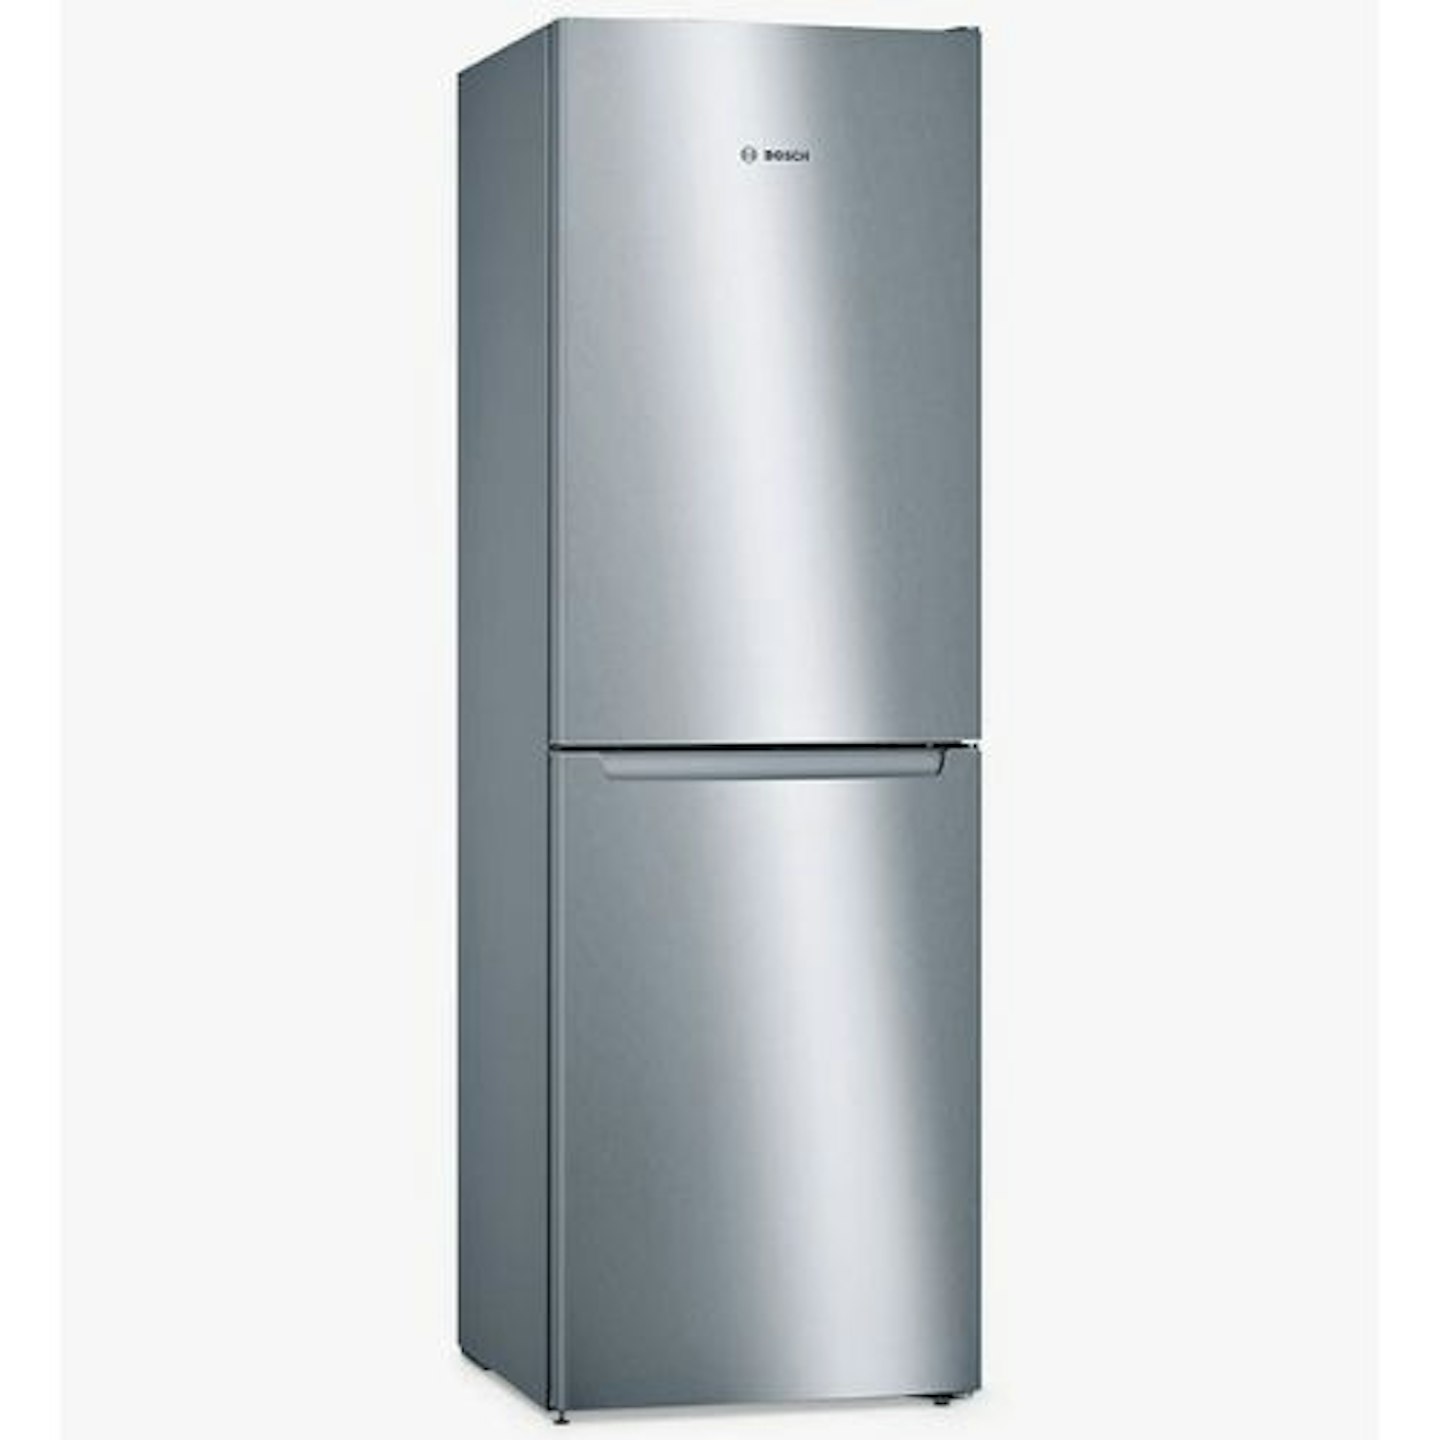 Bosch Series 2 KGN34NLEAG Freestanding 50/50 Fridge Freezer, Inox Look